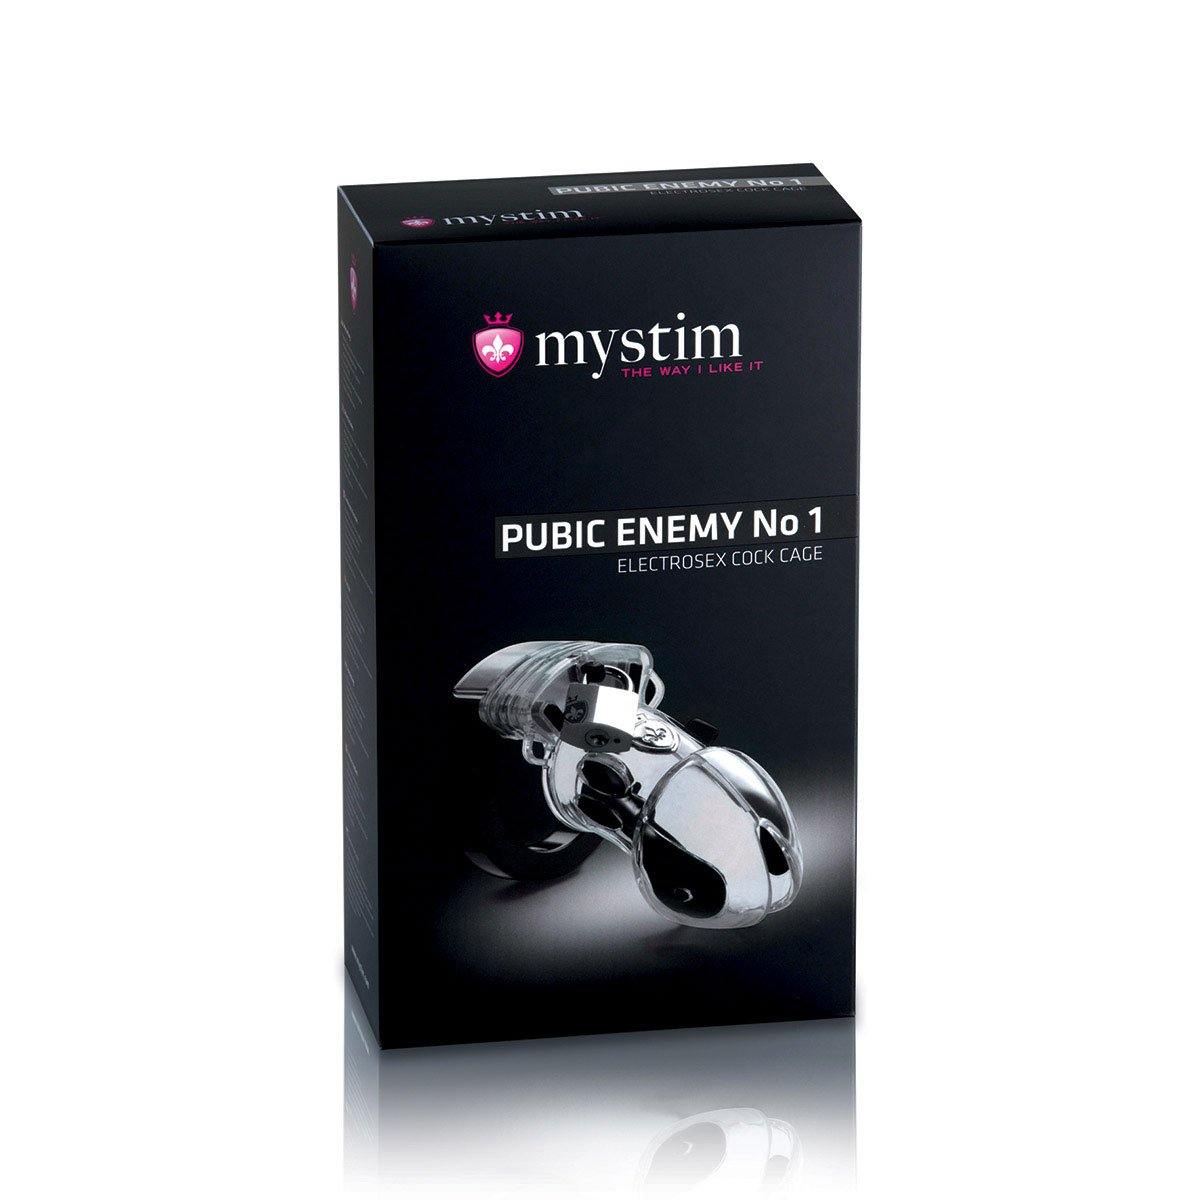 Mystim Public Enemy No 1 C-Cage E-Stim - Buy At Luxury Toy X - Free 3-Day Shipping